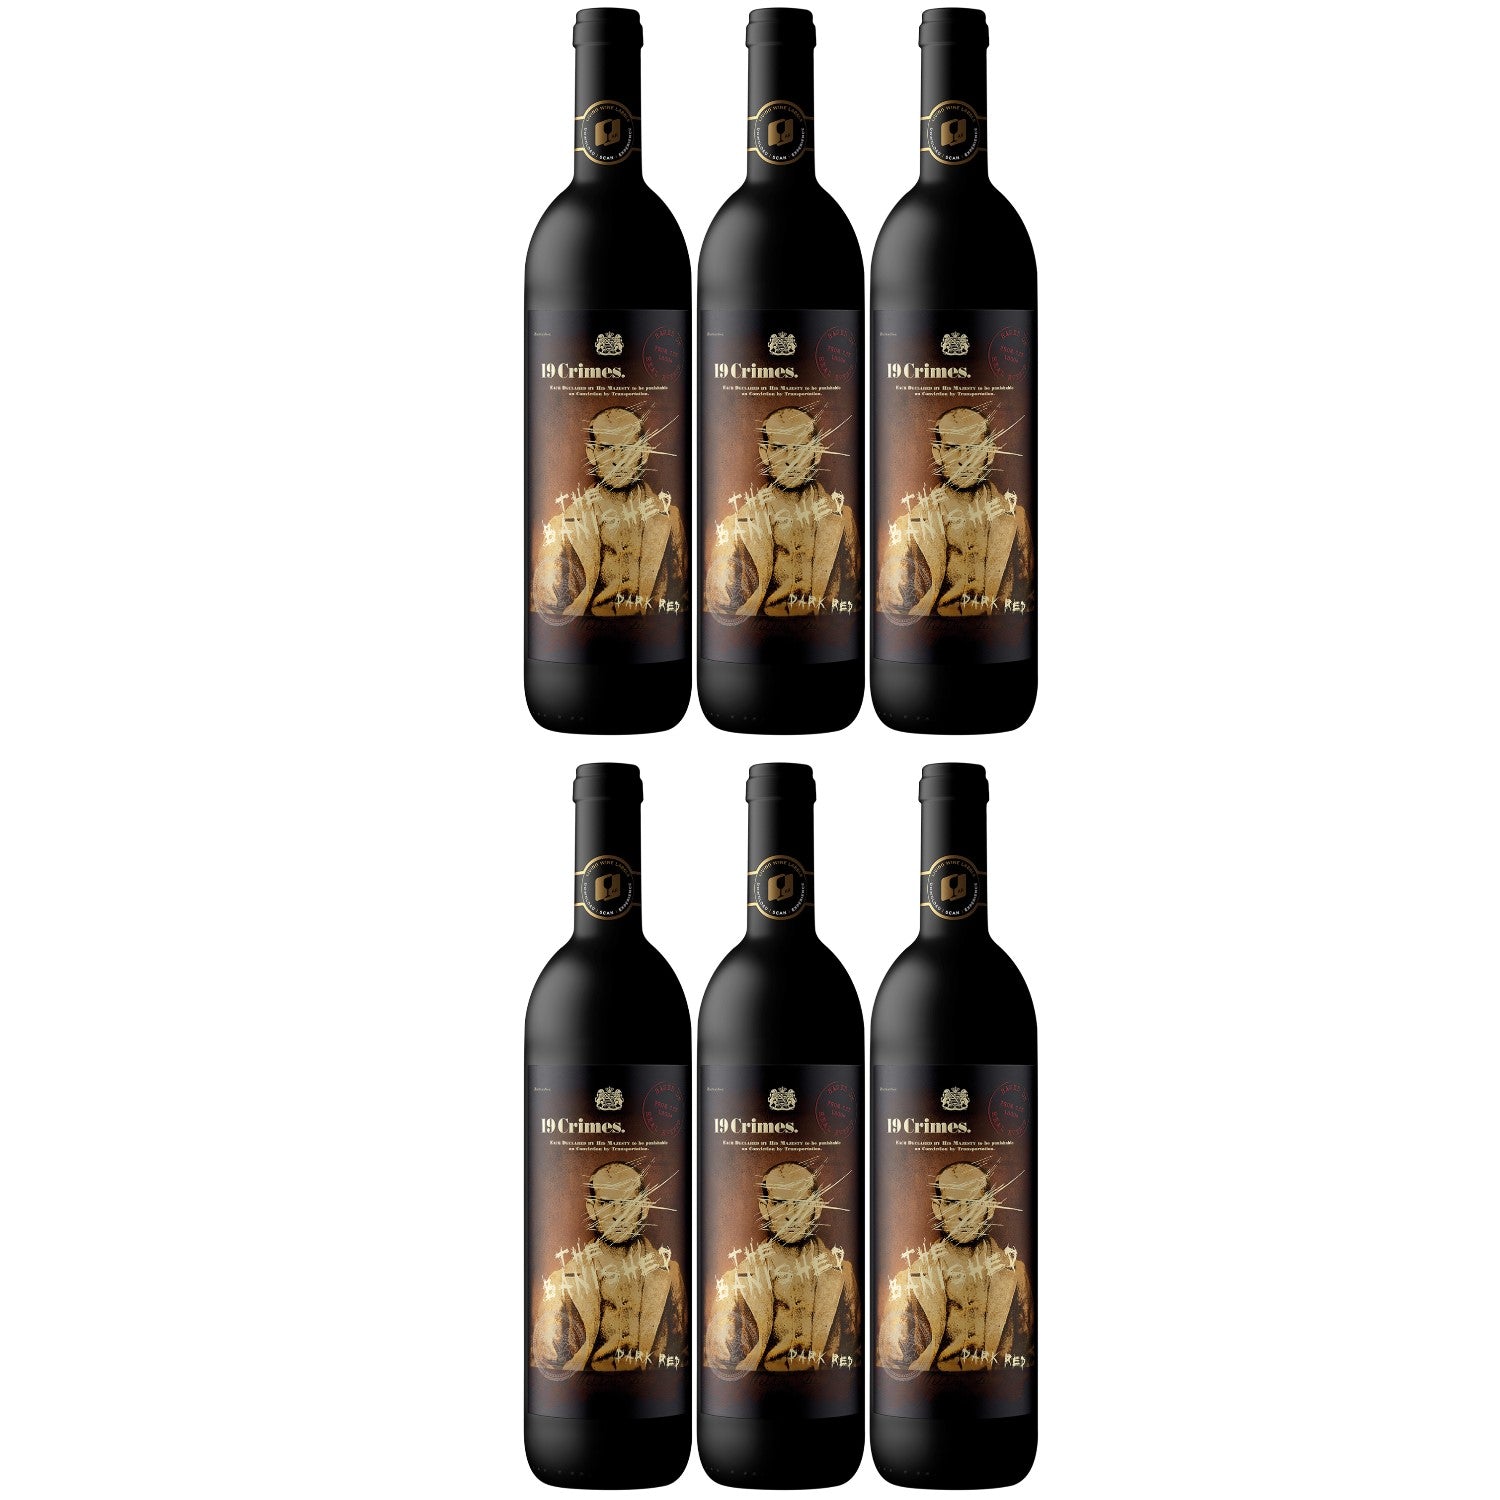 19 Crimes The Banished Cabernet Sauvignon Grenache Shiraz Rotwein Wein Trocken Australien (6 x 0.75l) - Versanel - Wein